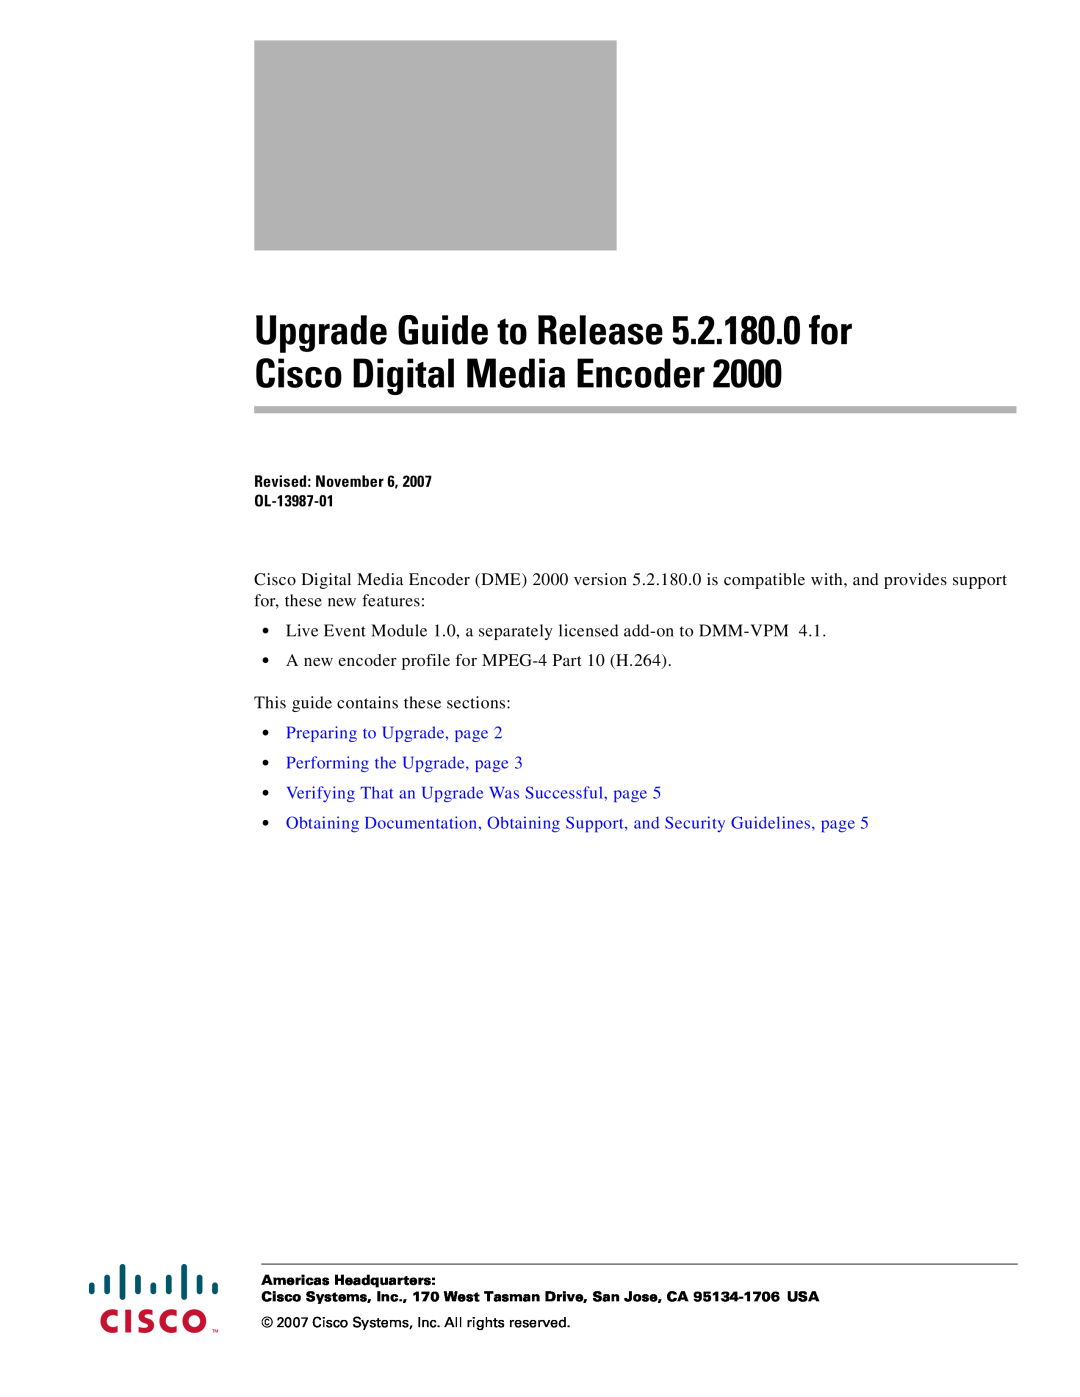 Cisco Systems 2000 manual Upgrade Guide to Release 5.2.180.0 for Cisco Digital Media Encoder 